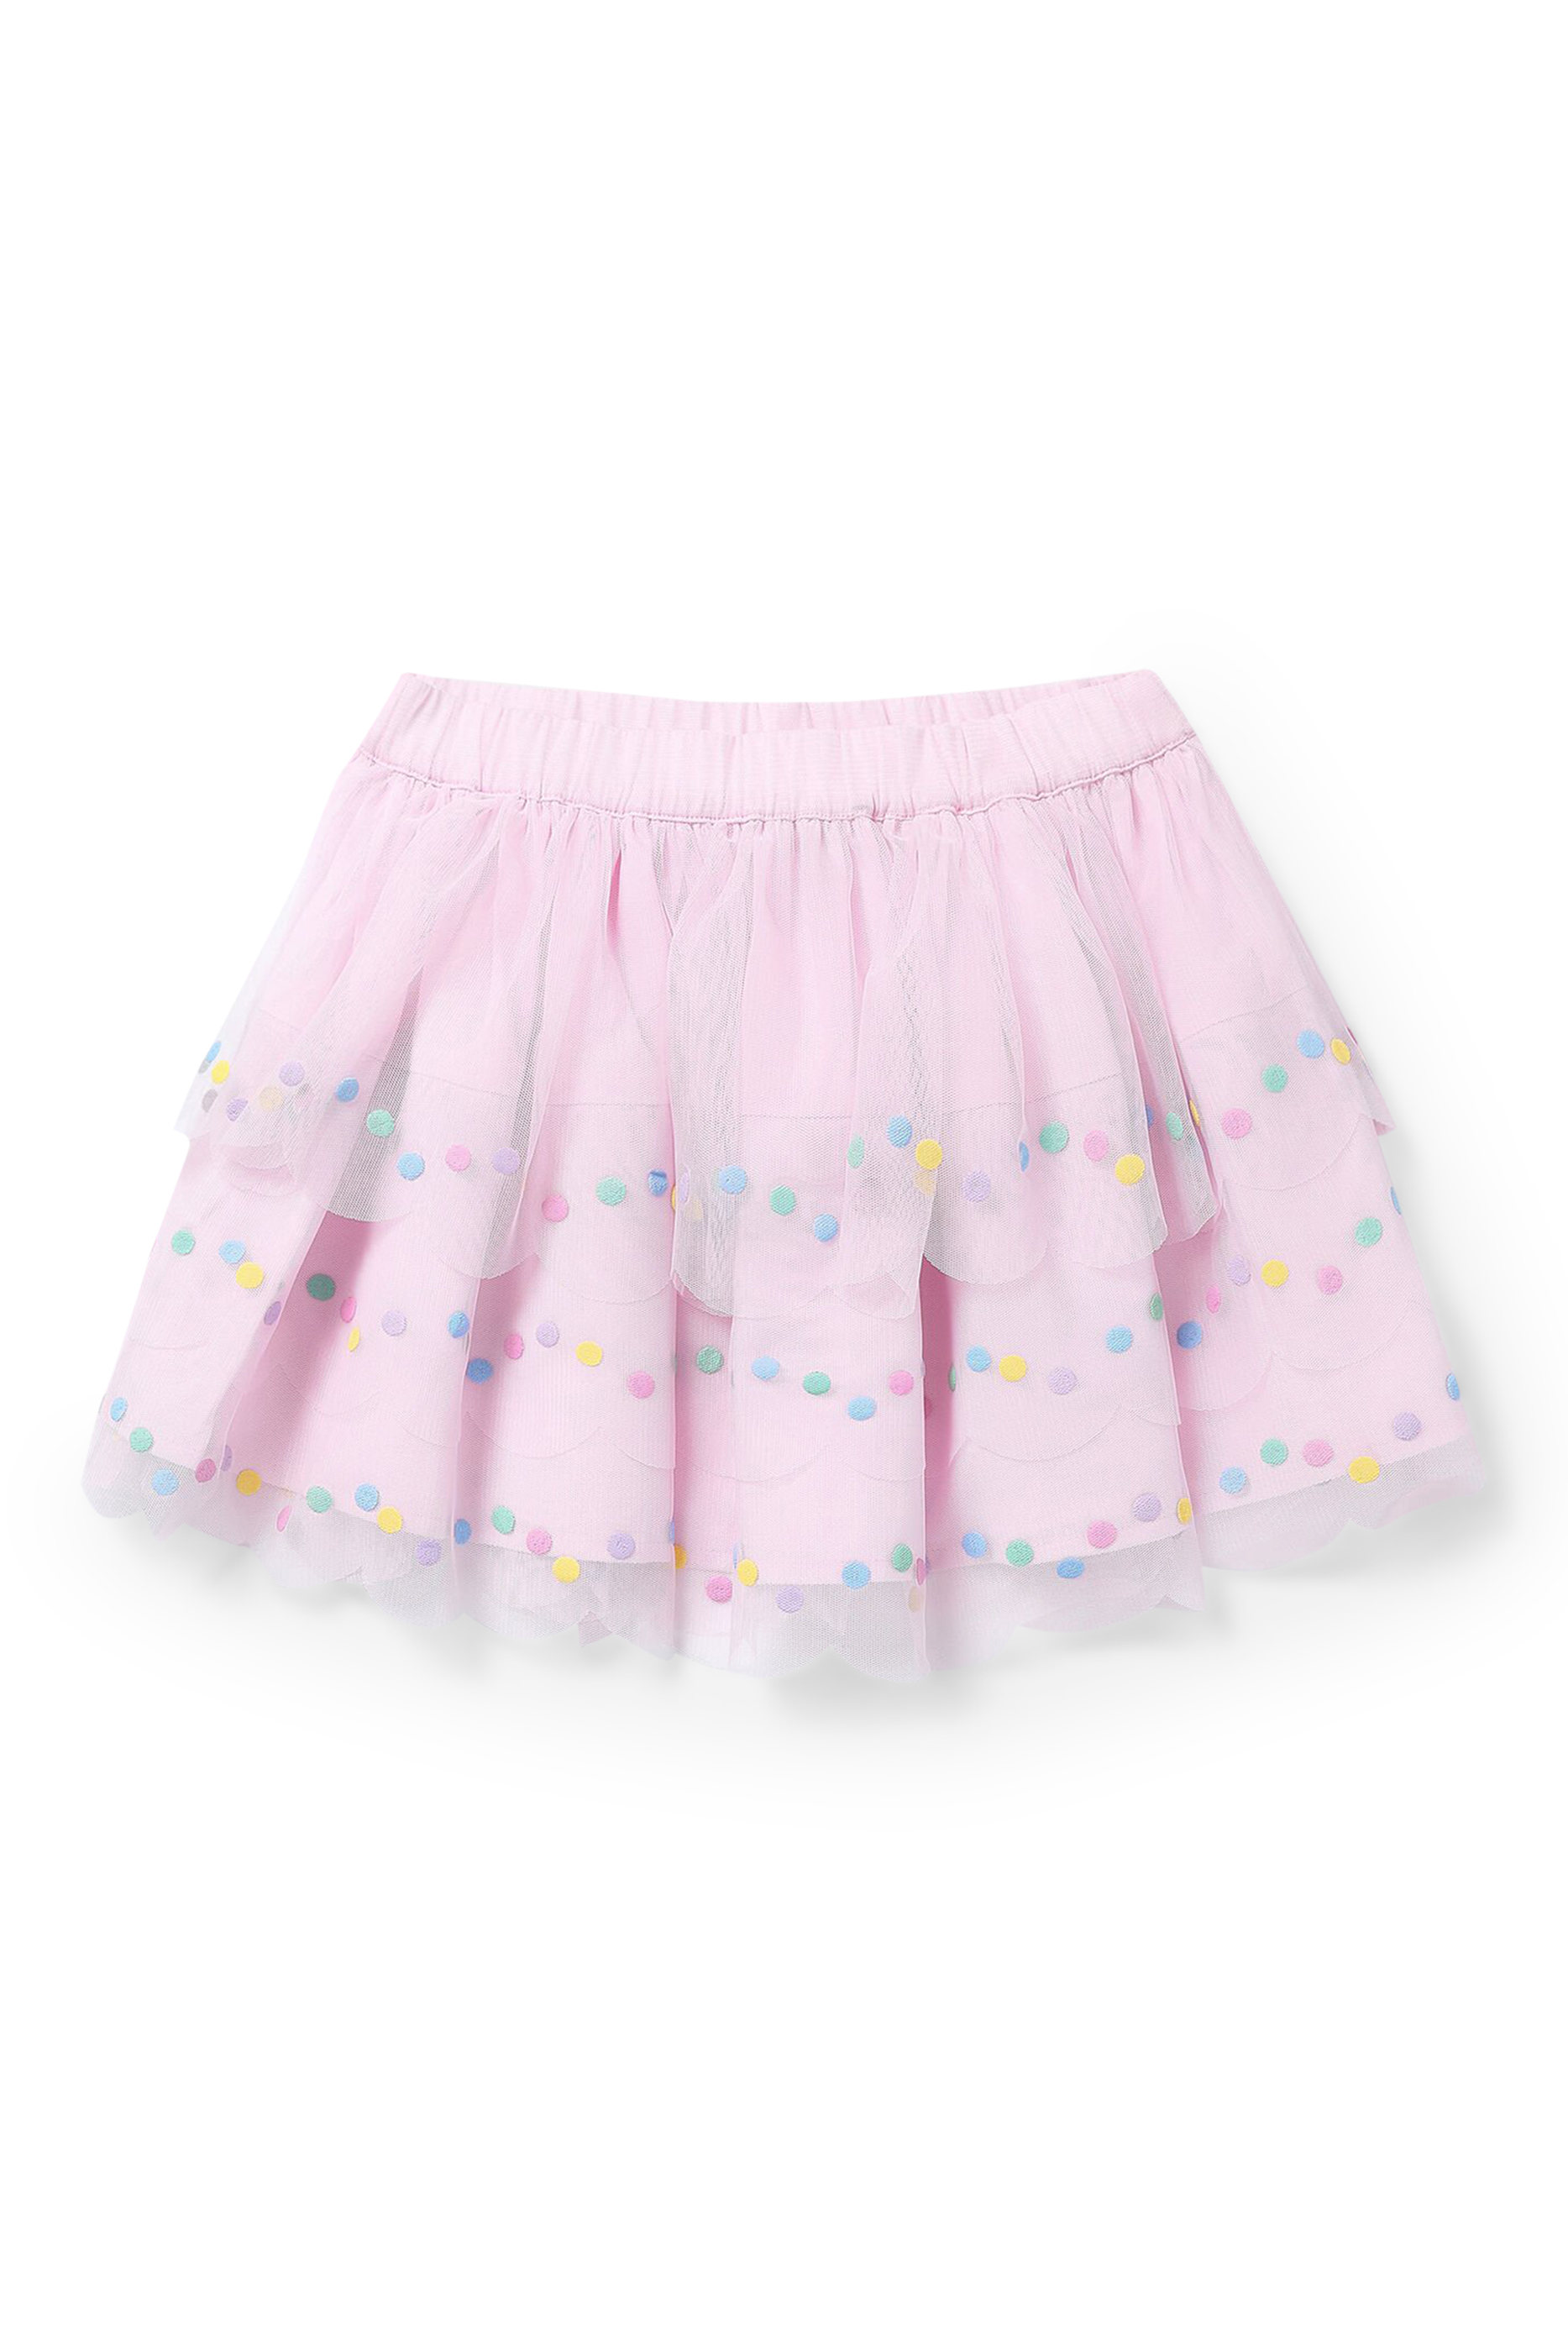 Buy Stella McCartney Kids Confetti Dot Tutu Skirt for Girl ...